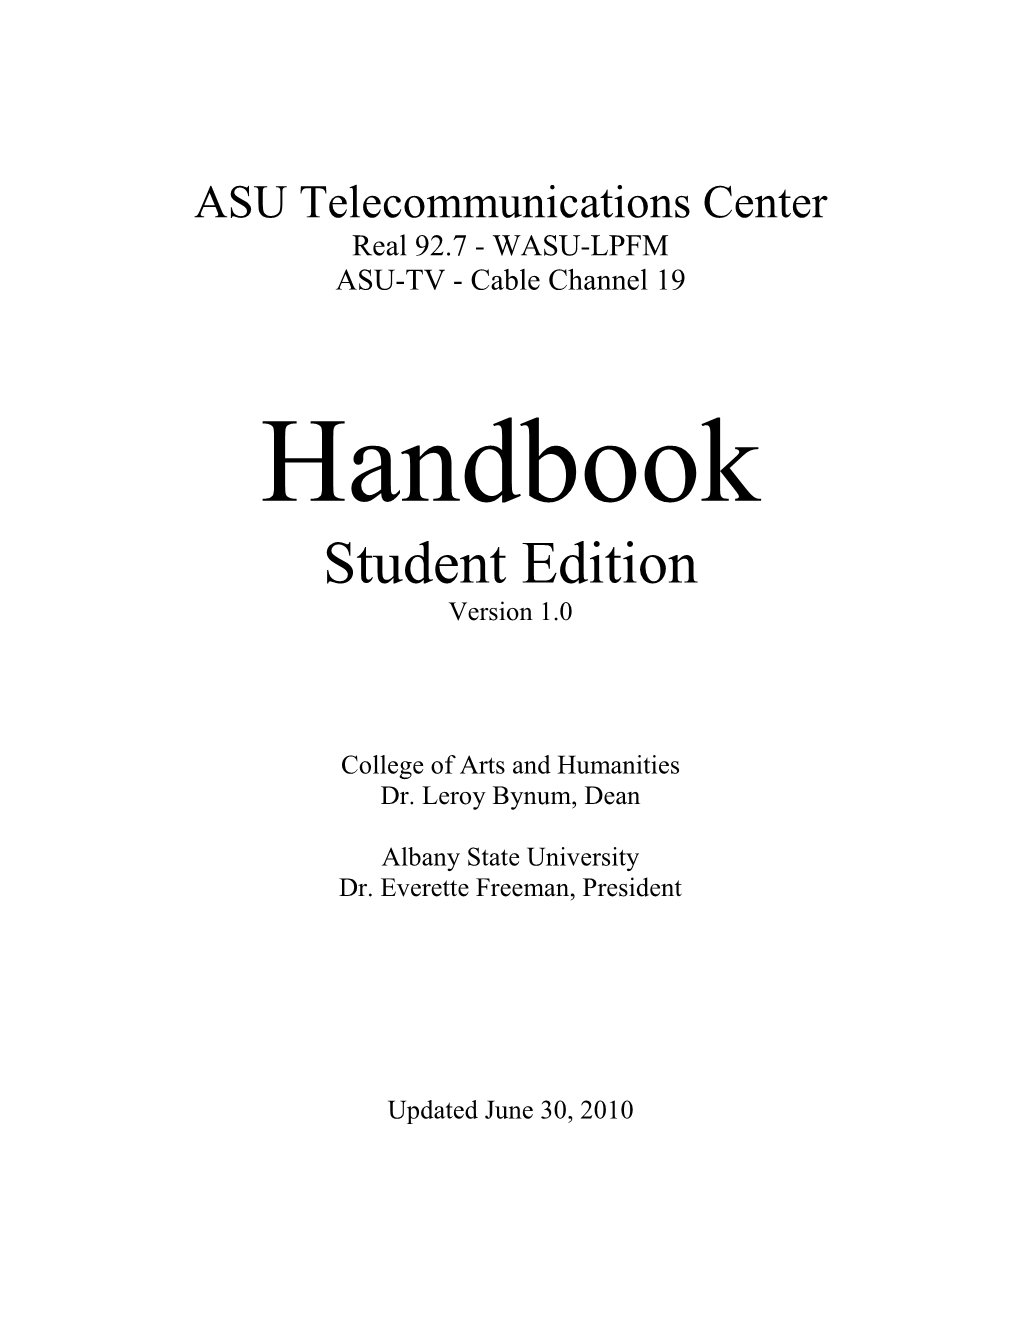 Student Media Handbook